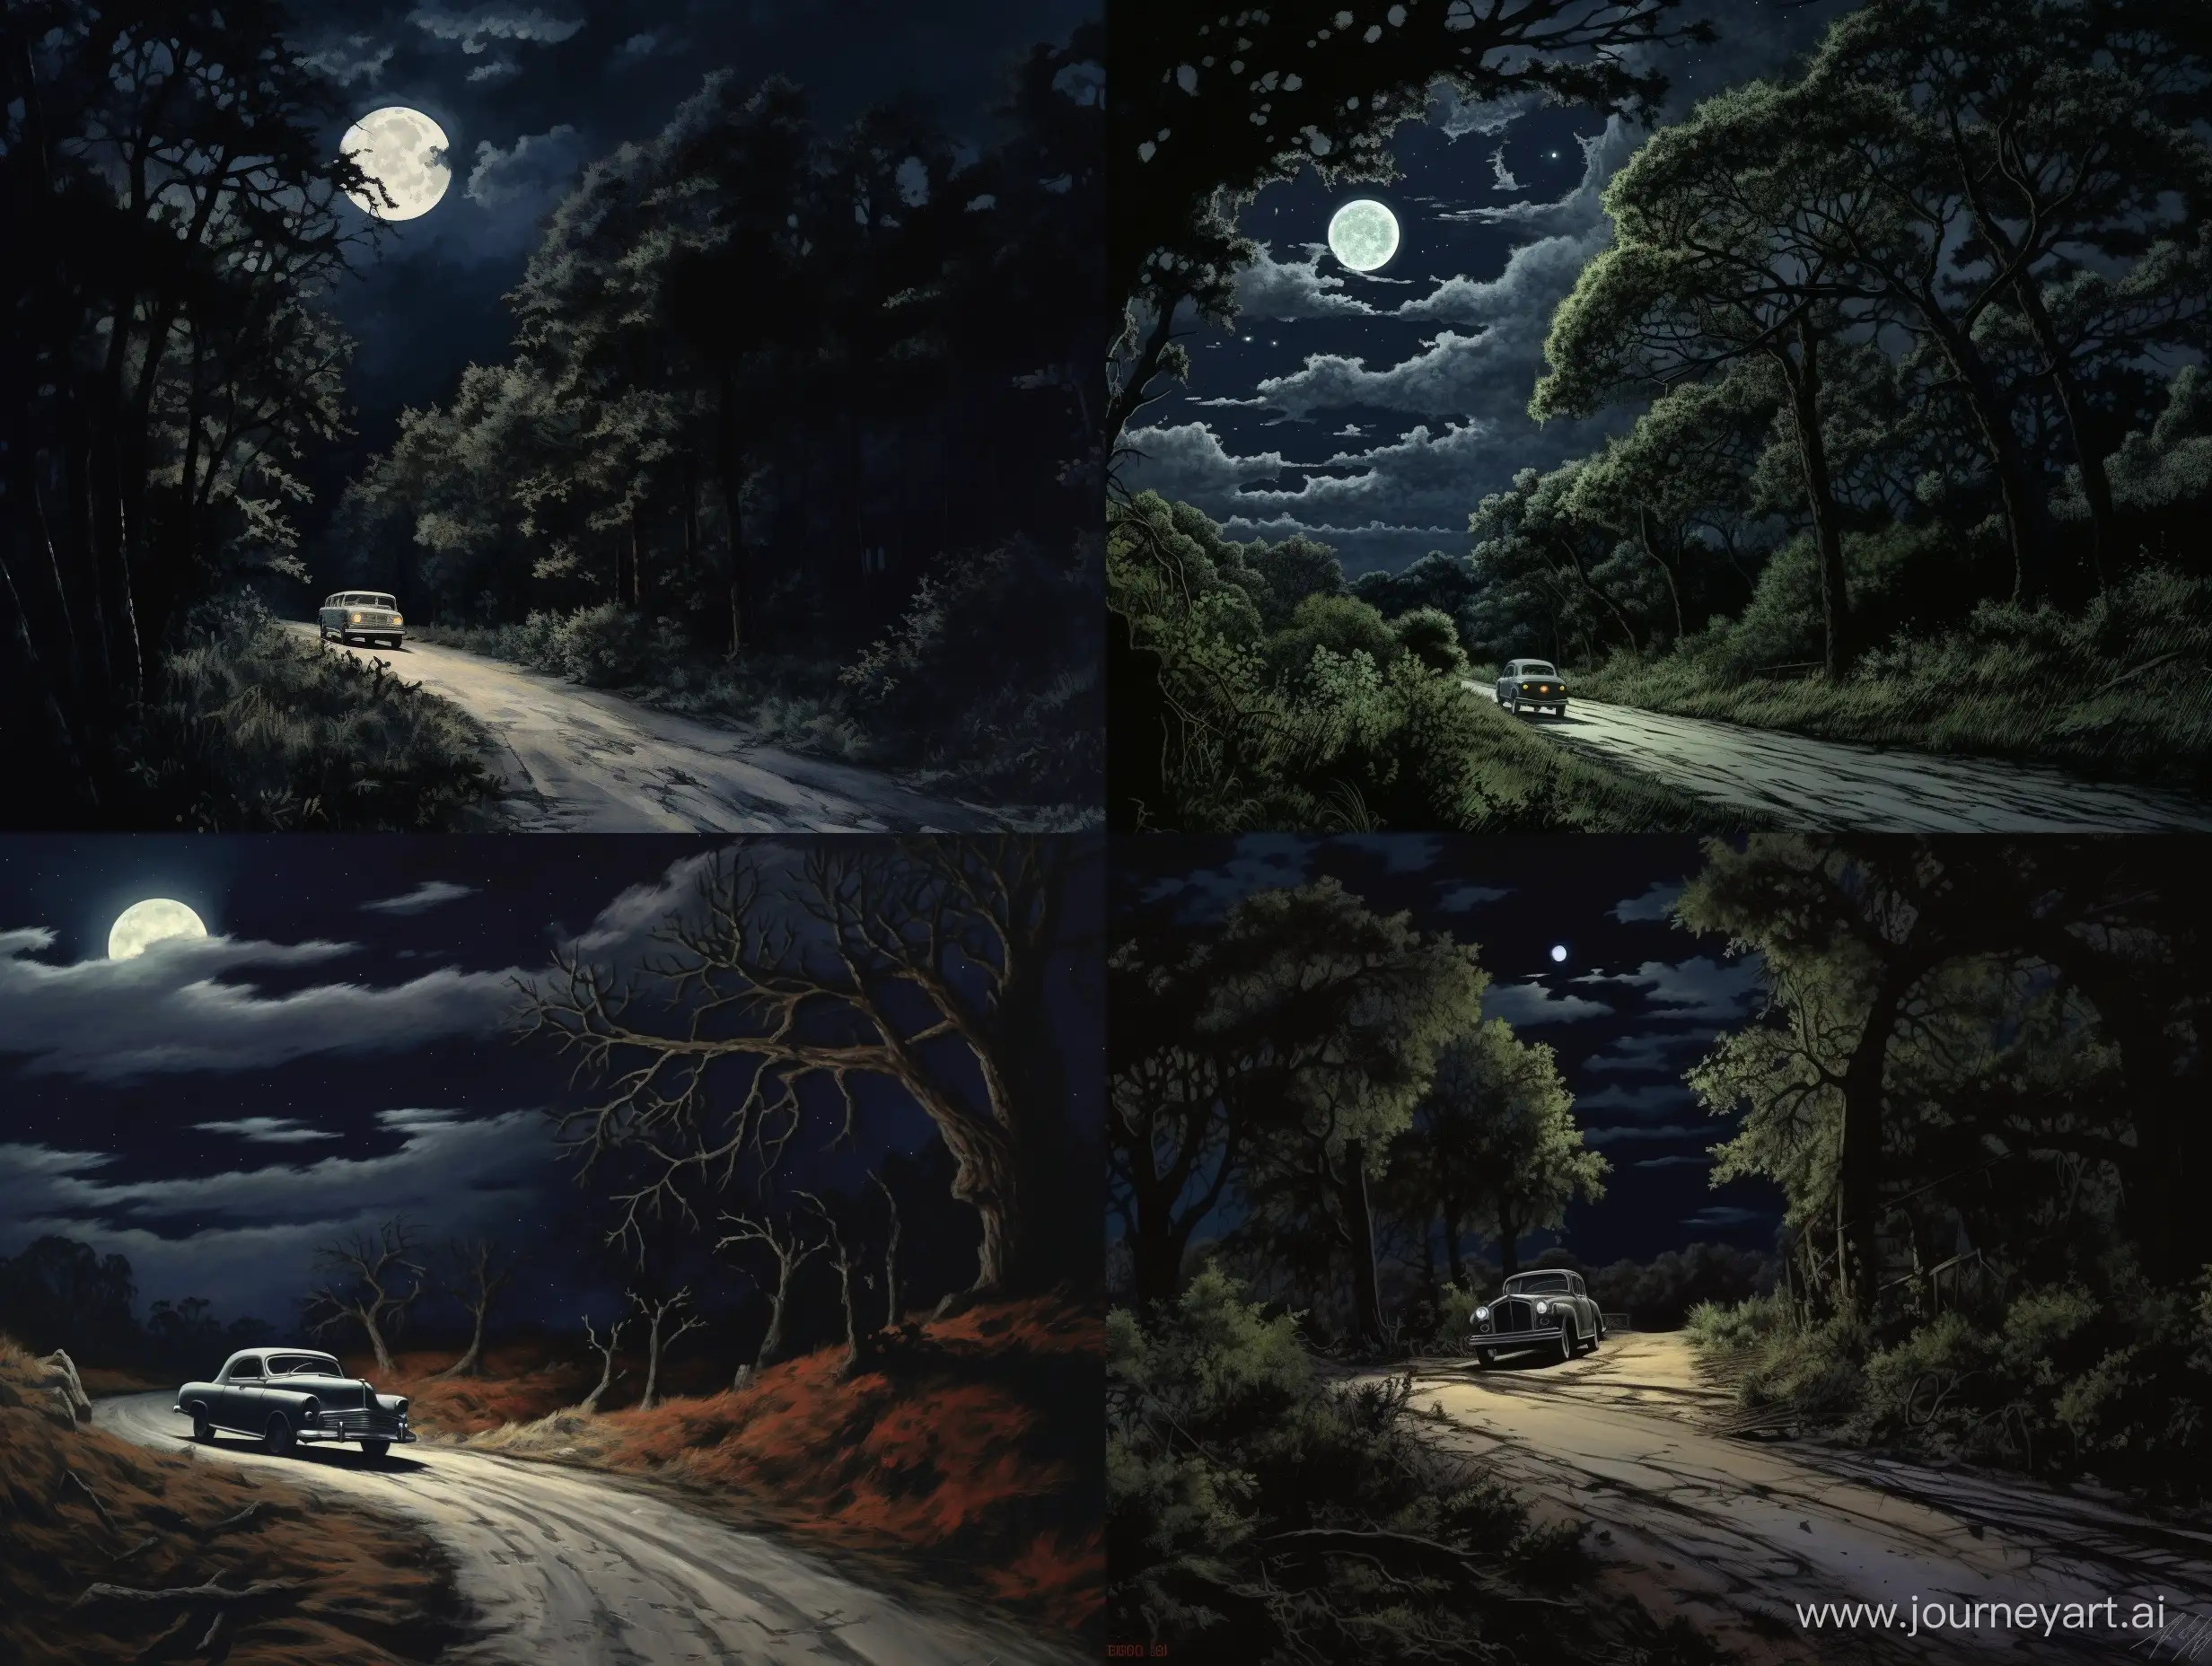 Enigmatic-Night-Drive-Through-Shadowy-Wilderness